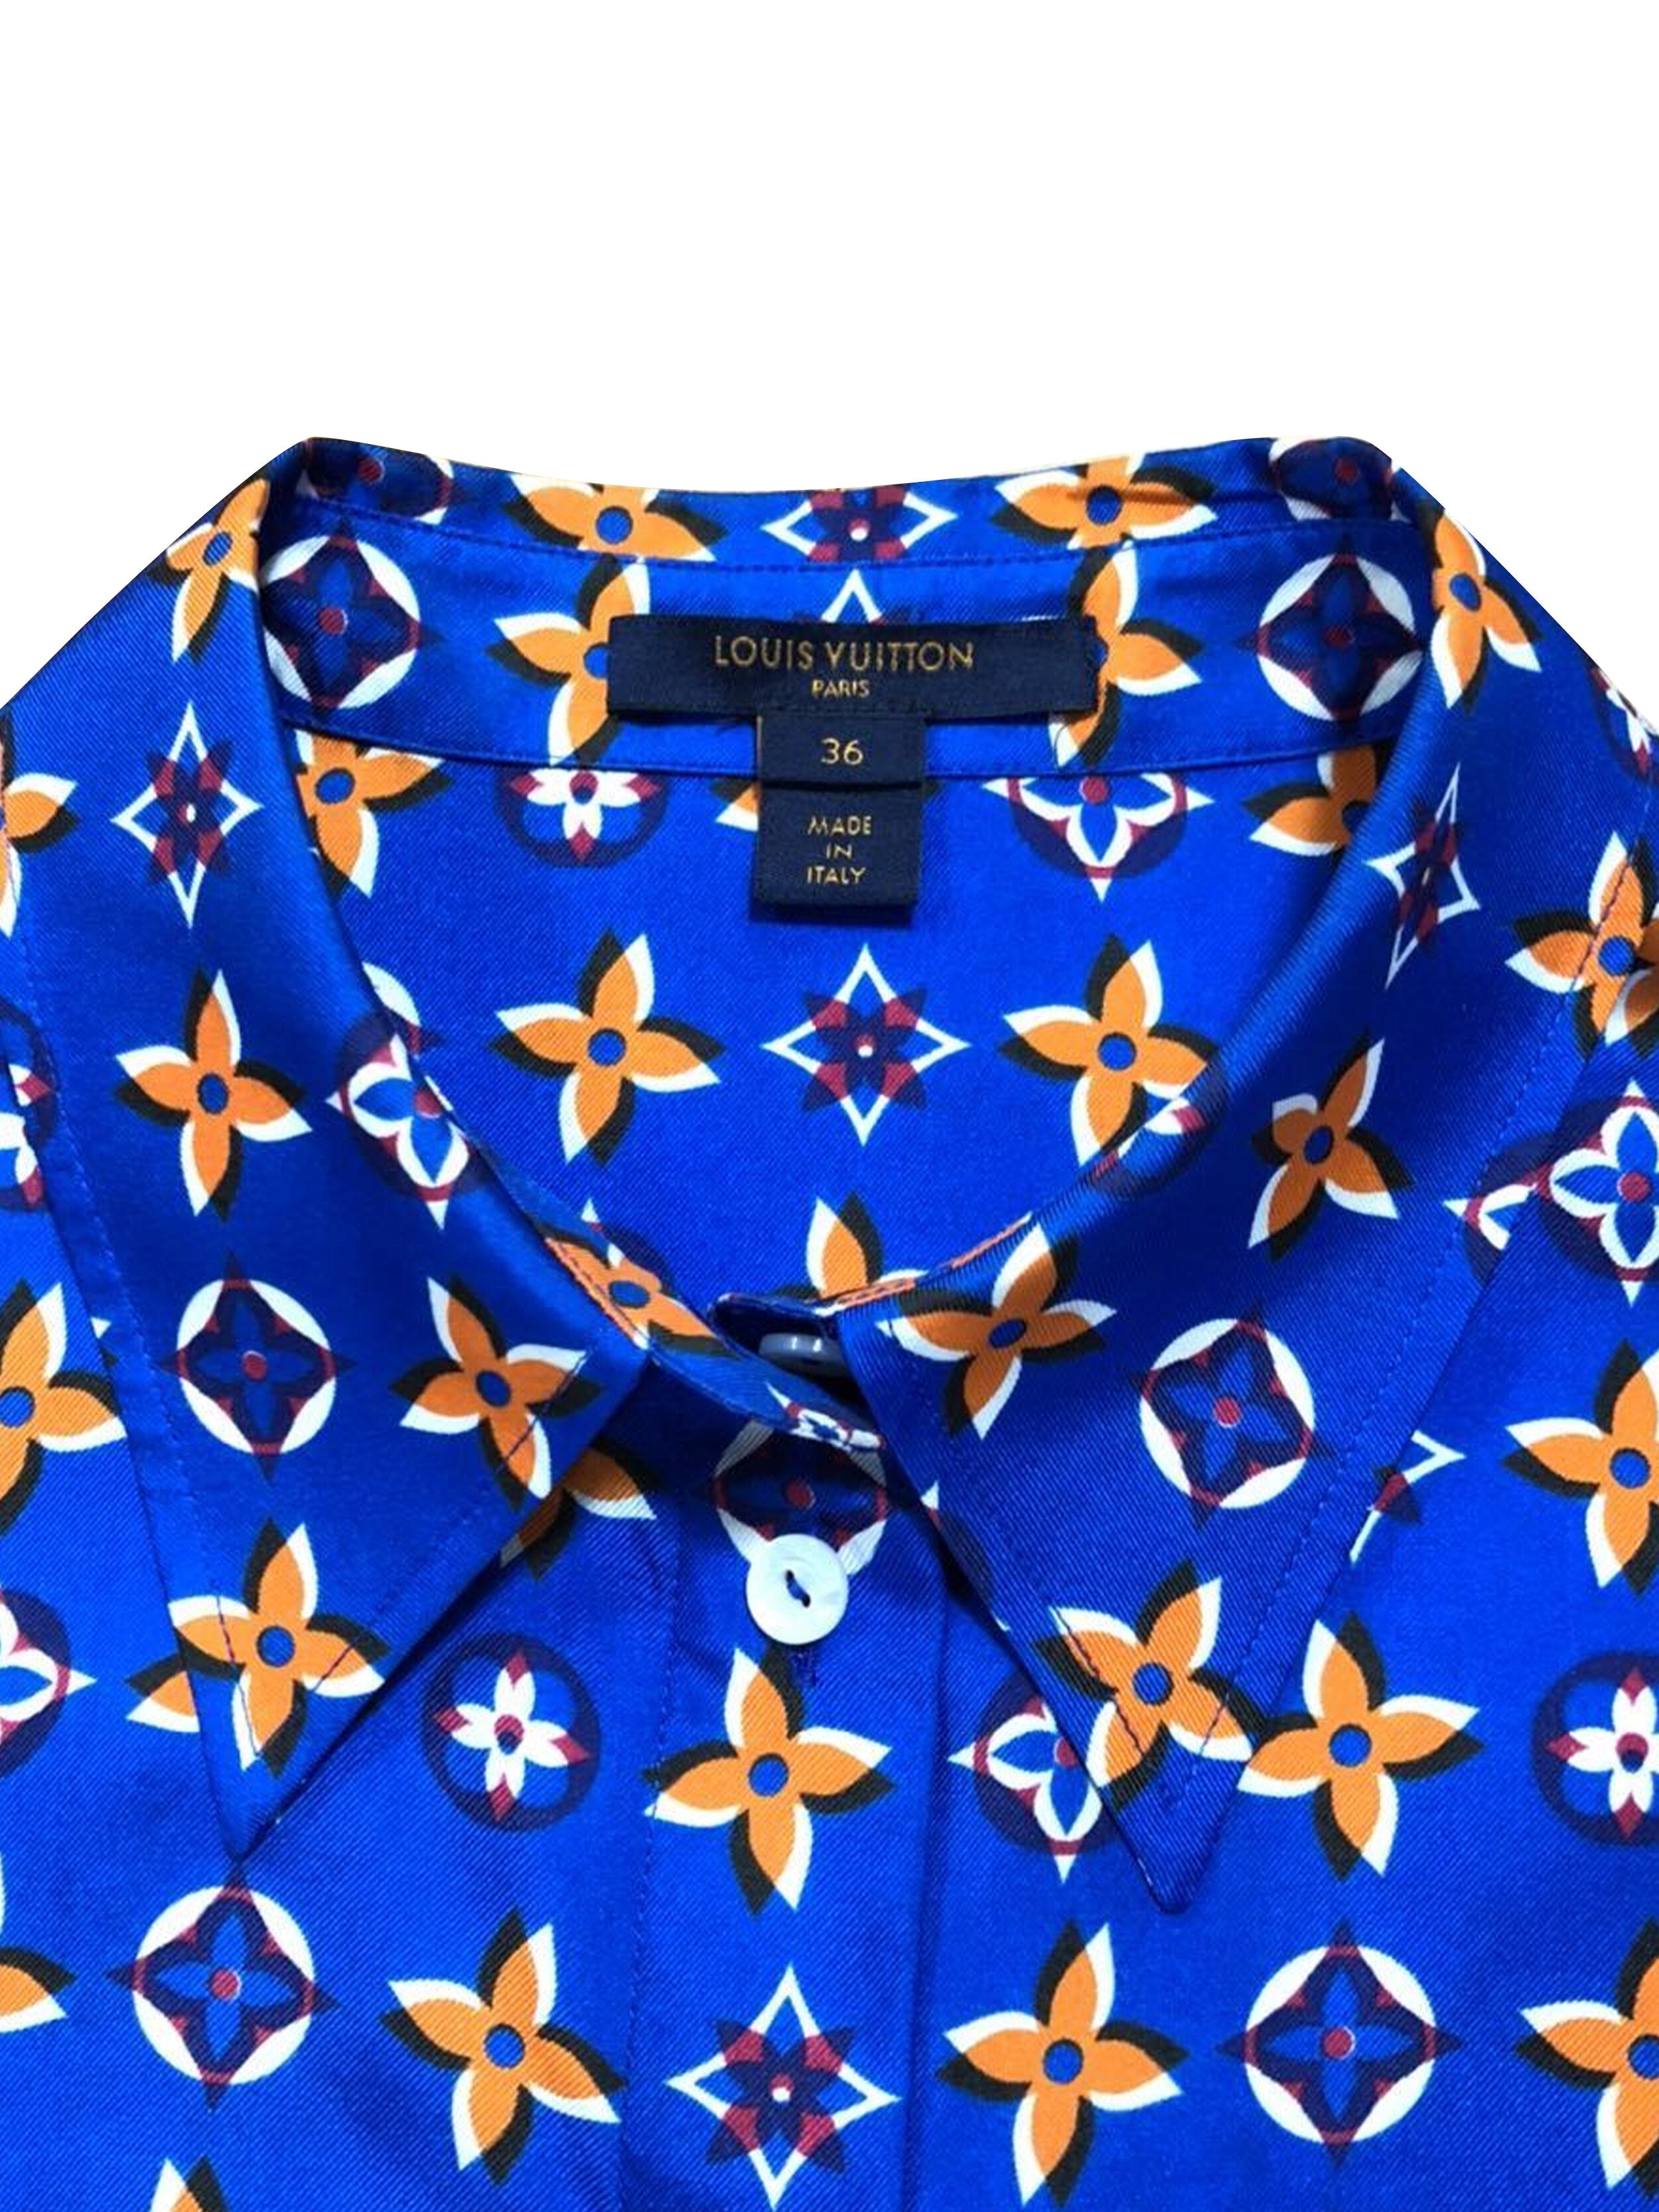 Louis Vuitton dress collar shirt LV initials genuine from USA seller